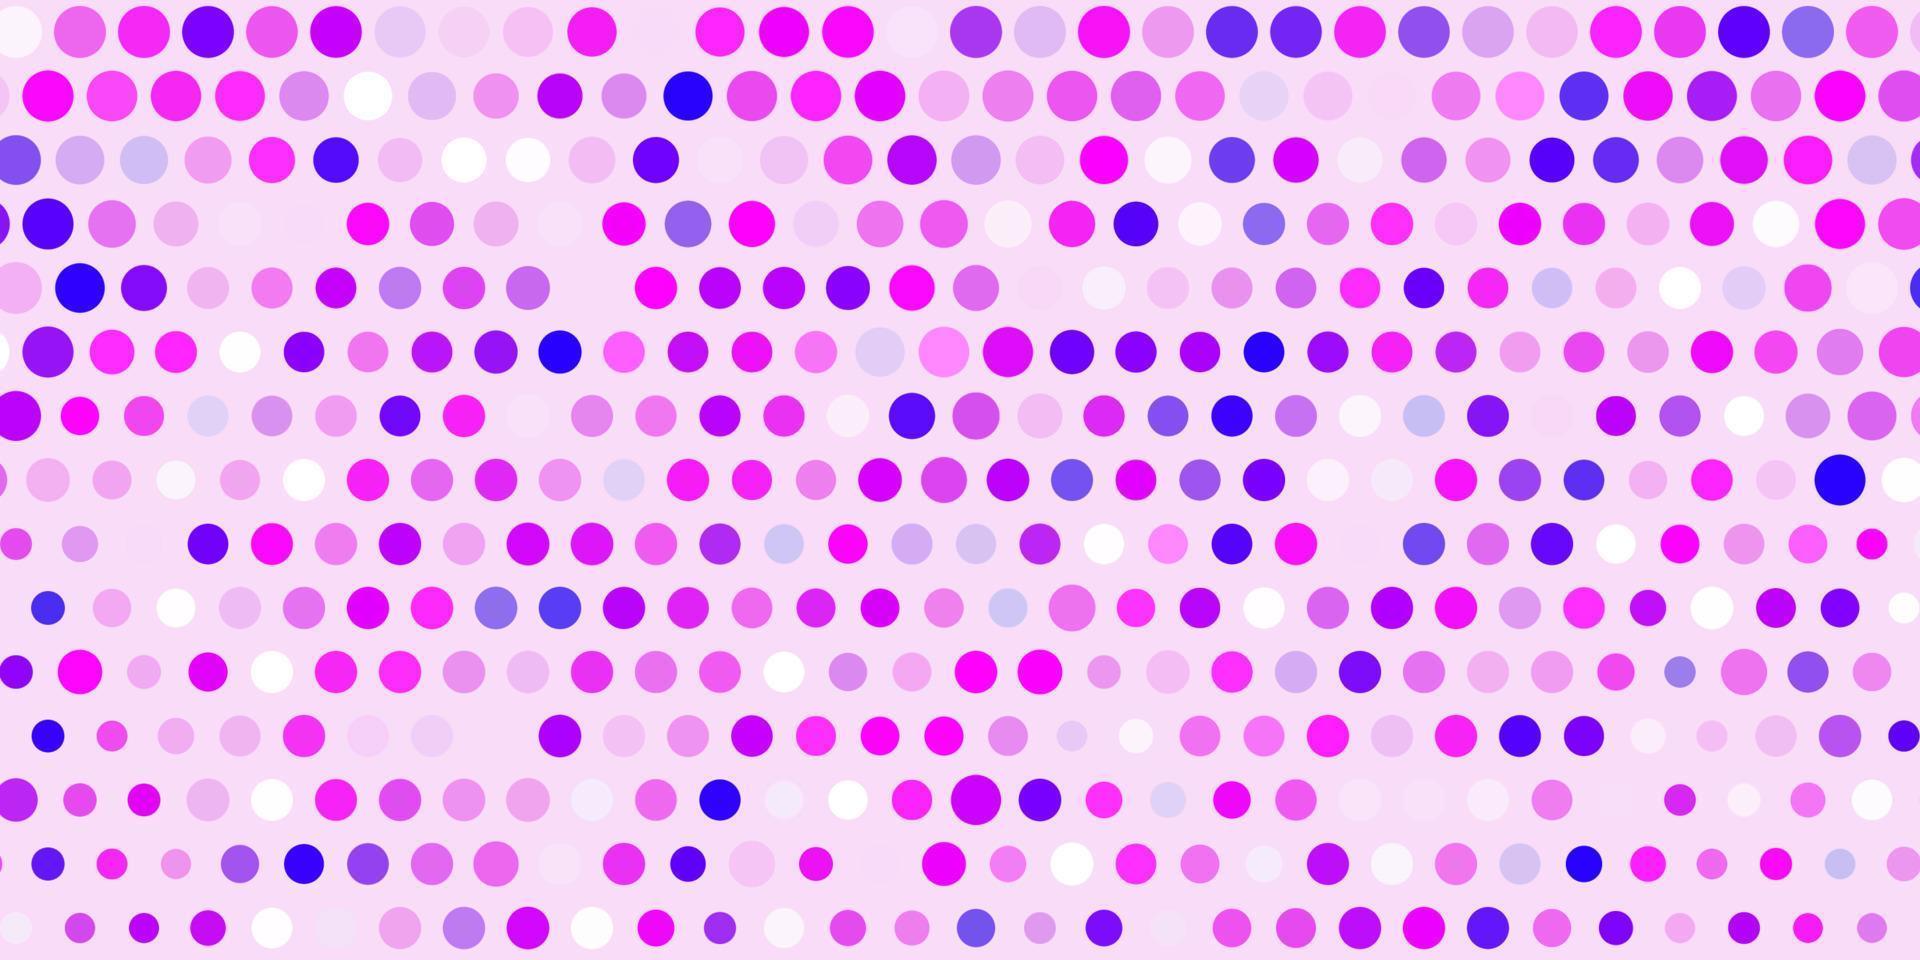 Fondo de vector violeta, rosa claro con puntos.